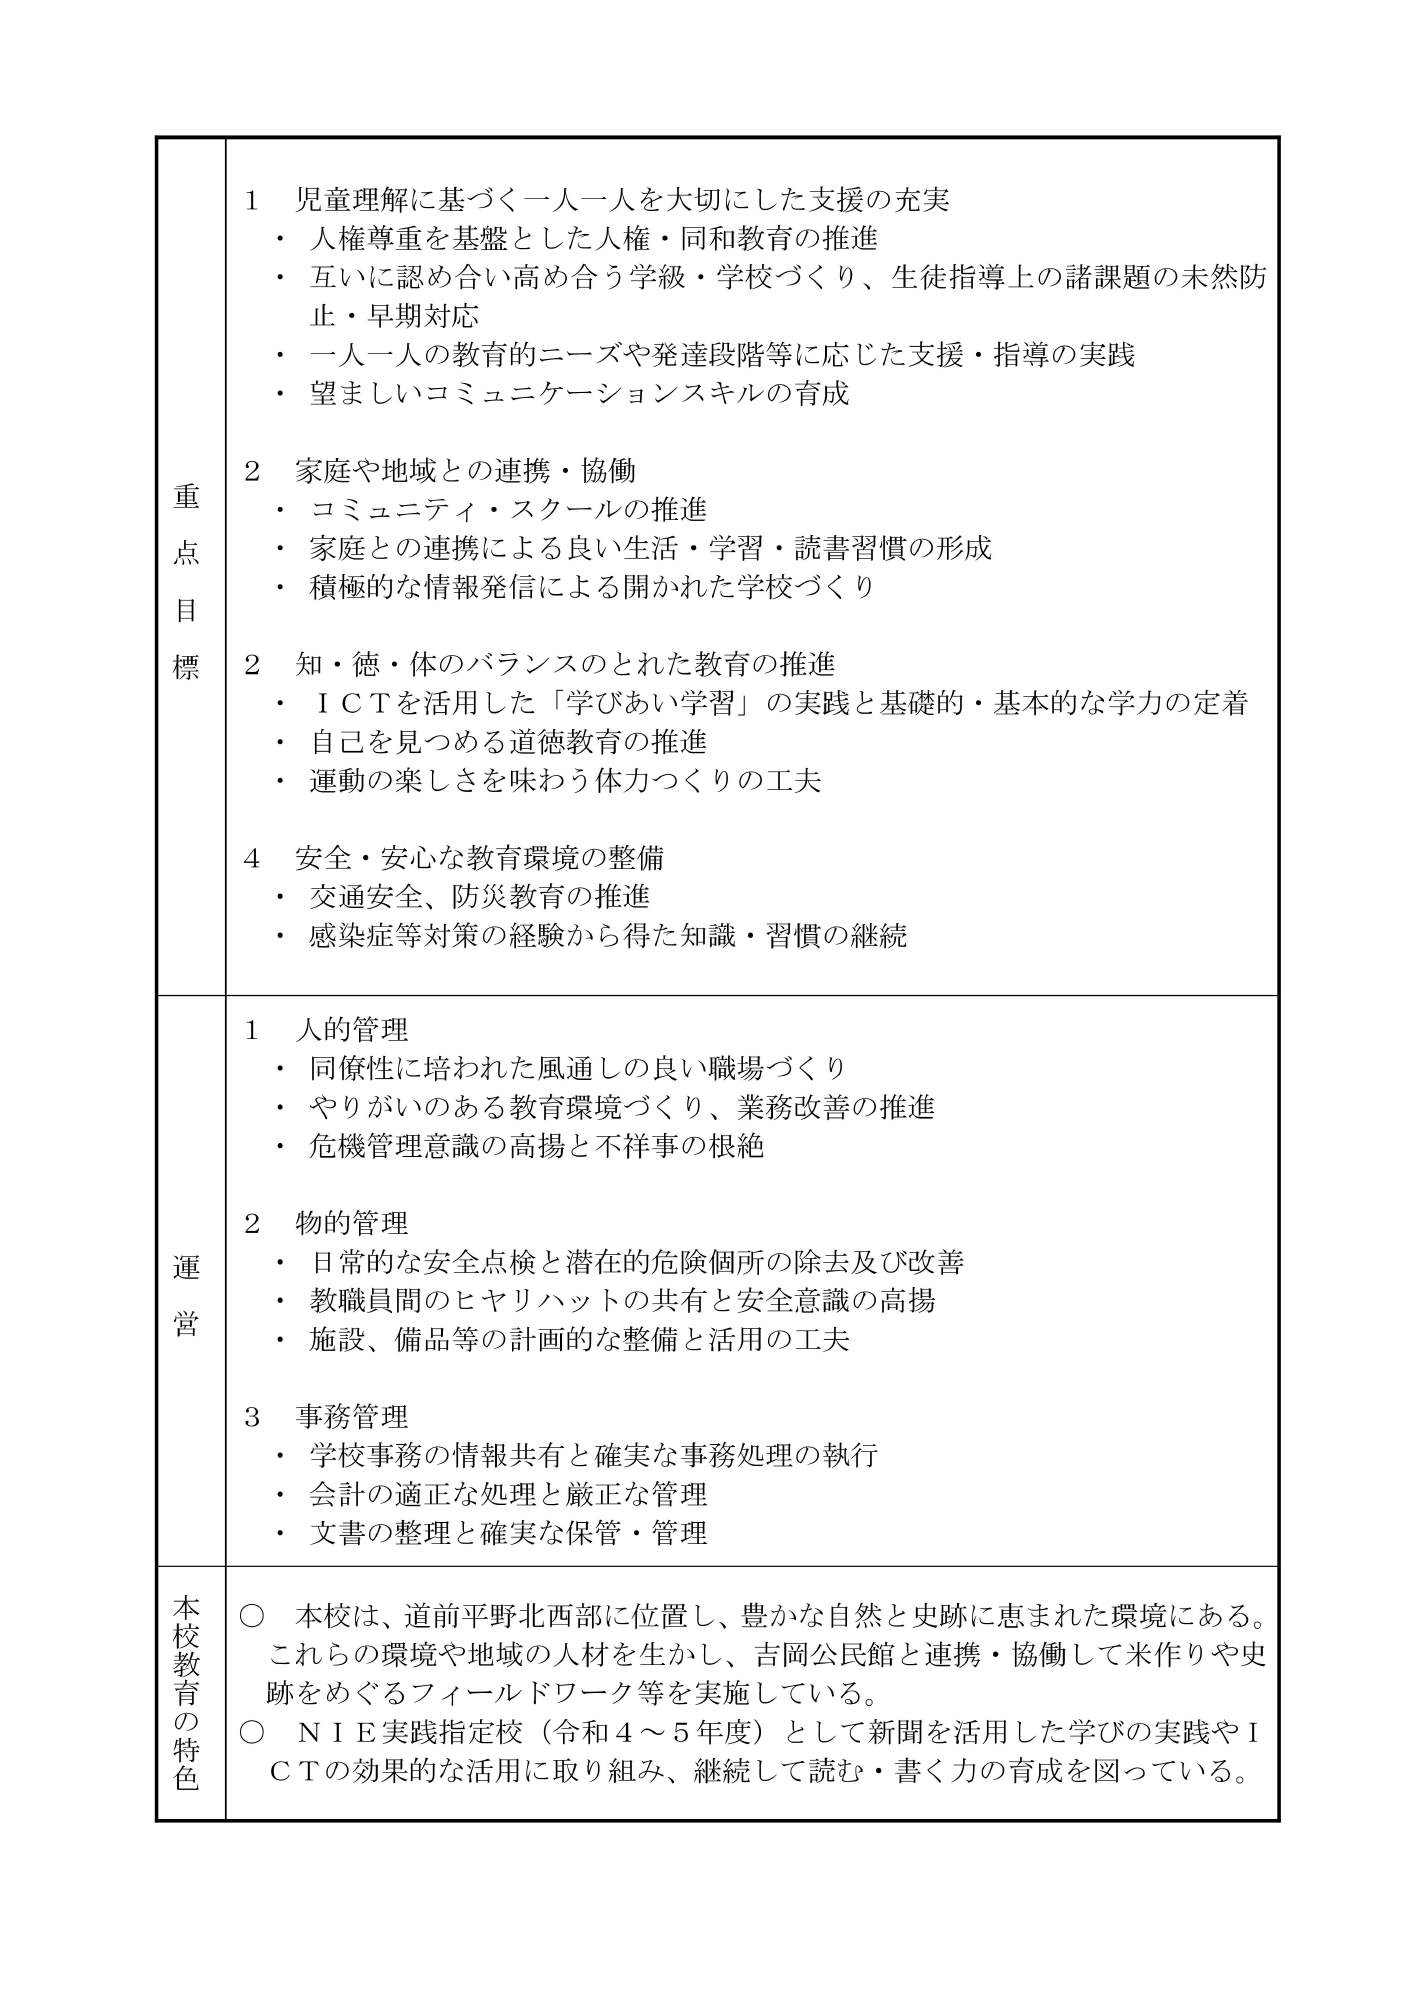 ★R6 教育計画(吉岡小) R6.04-02